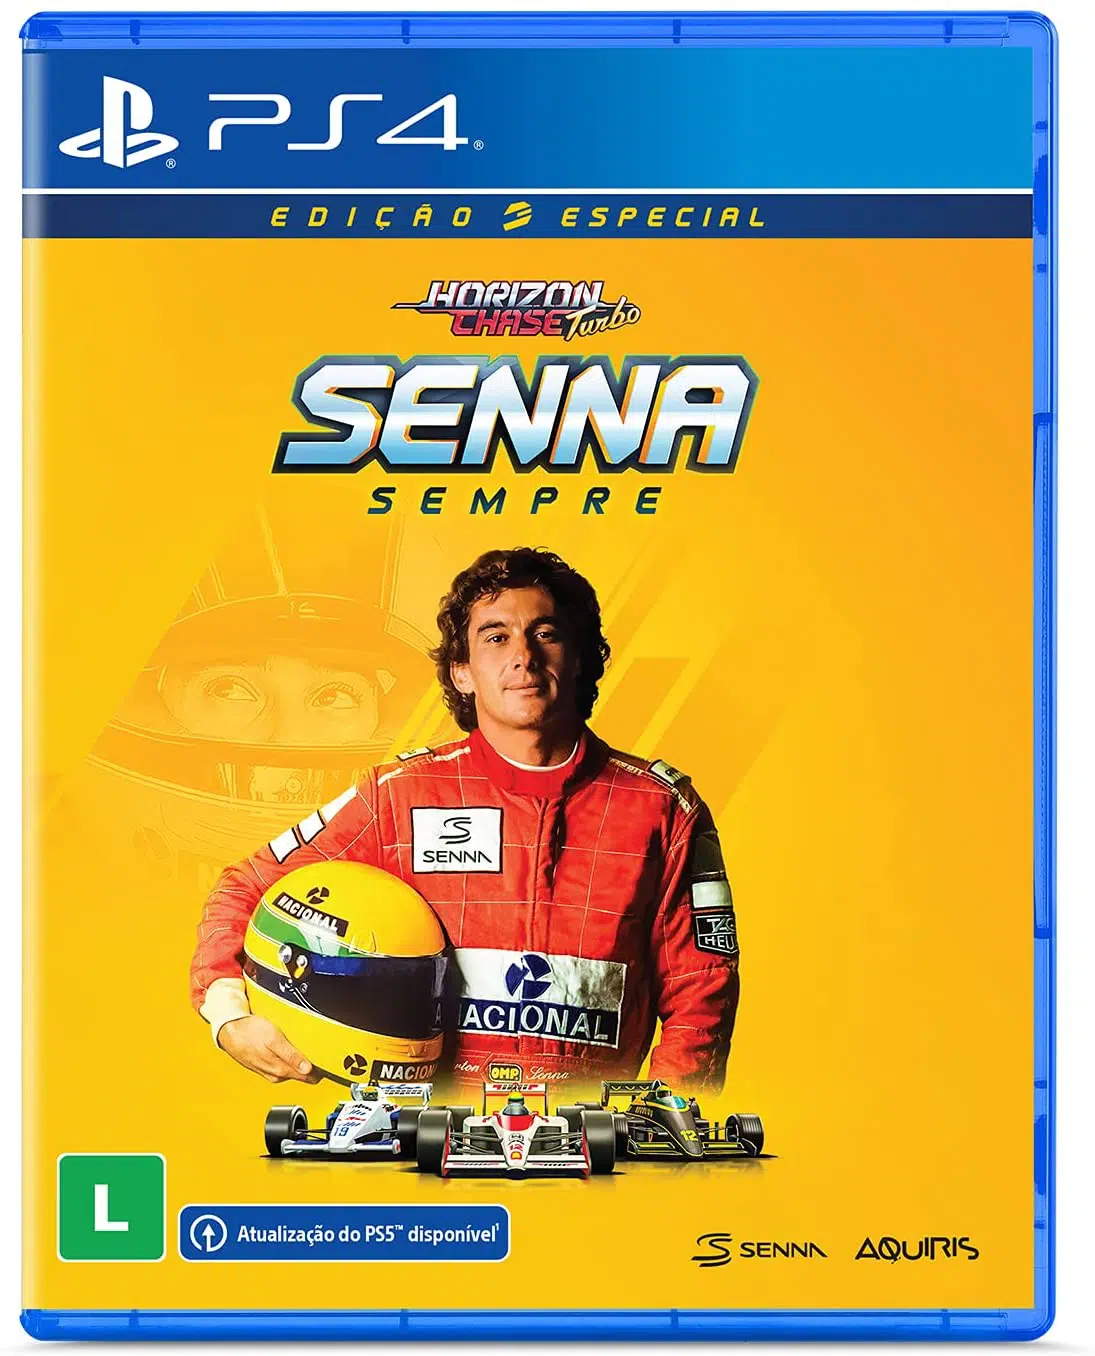 Imagem da capa da edição física de Horizon Chase Turbo Senna Sempre